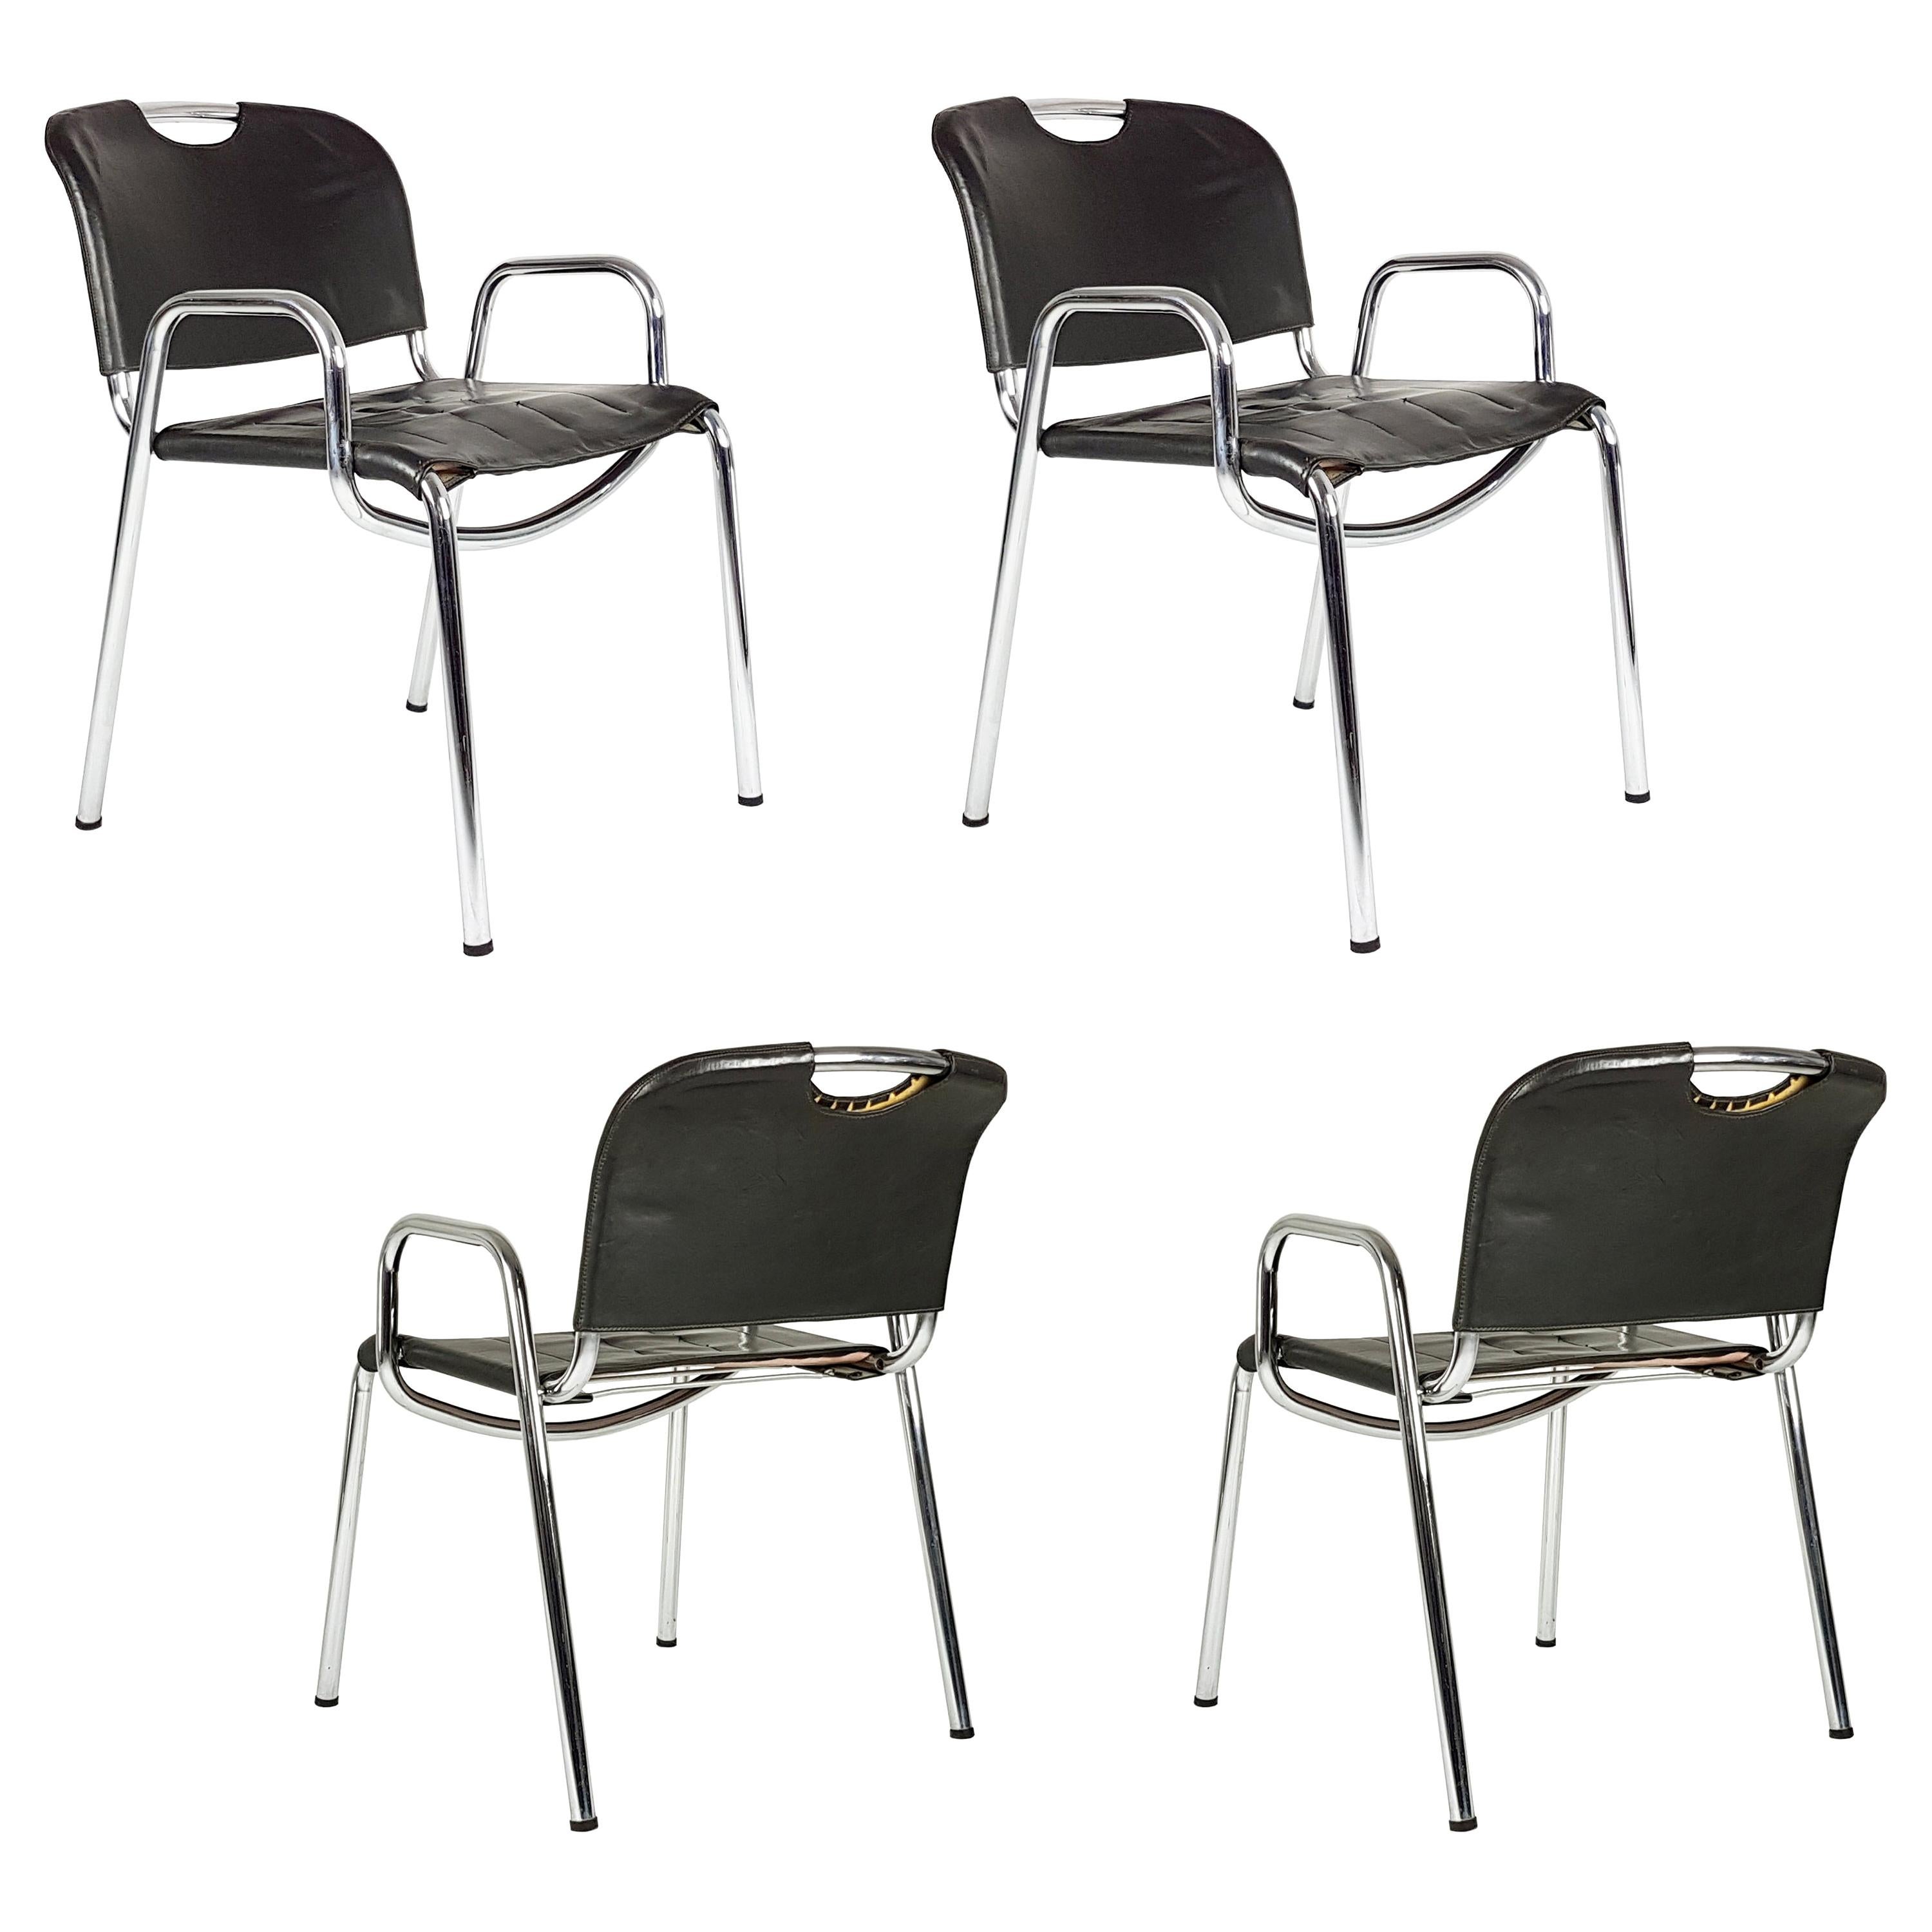 Castiglietta-Stühle aus Metall und braunem Leder von A. Castiglioni für Zanotta, 4 Exemplare